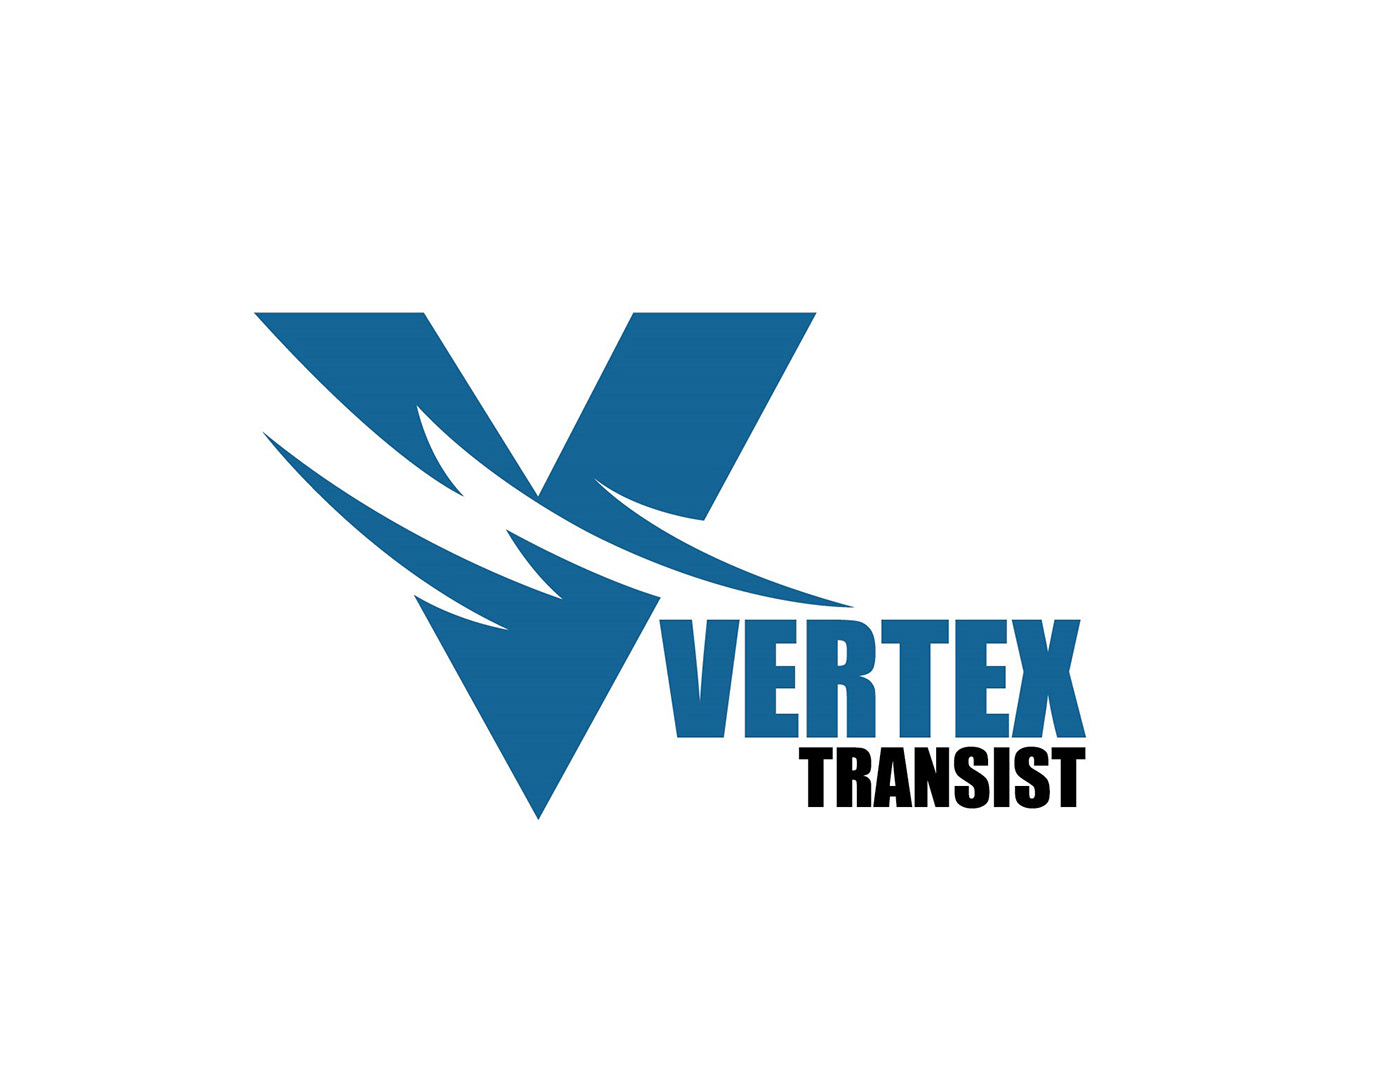 Logoooosss transist Transist Logo vertex Vertex transist logo